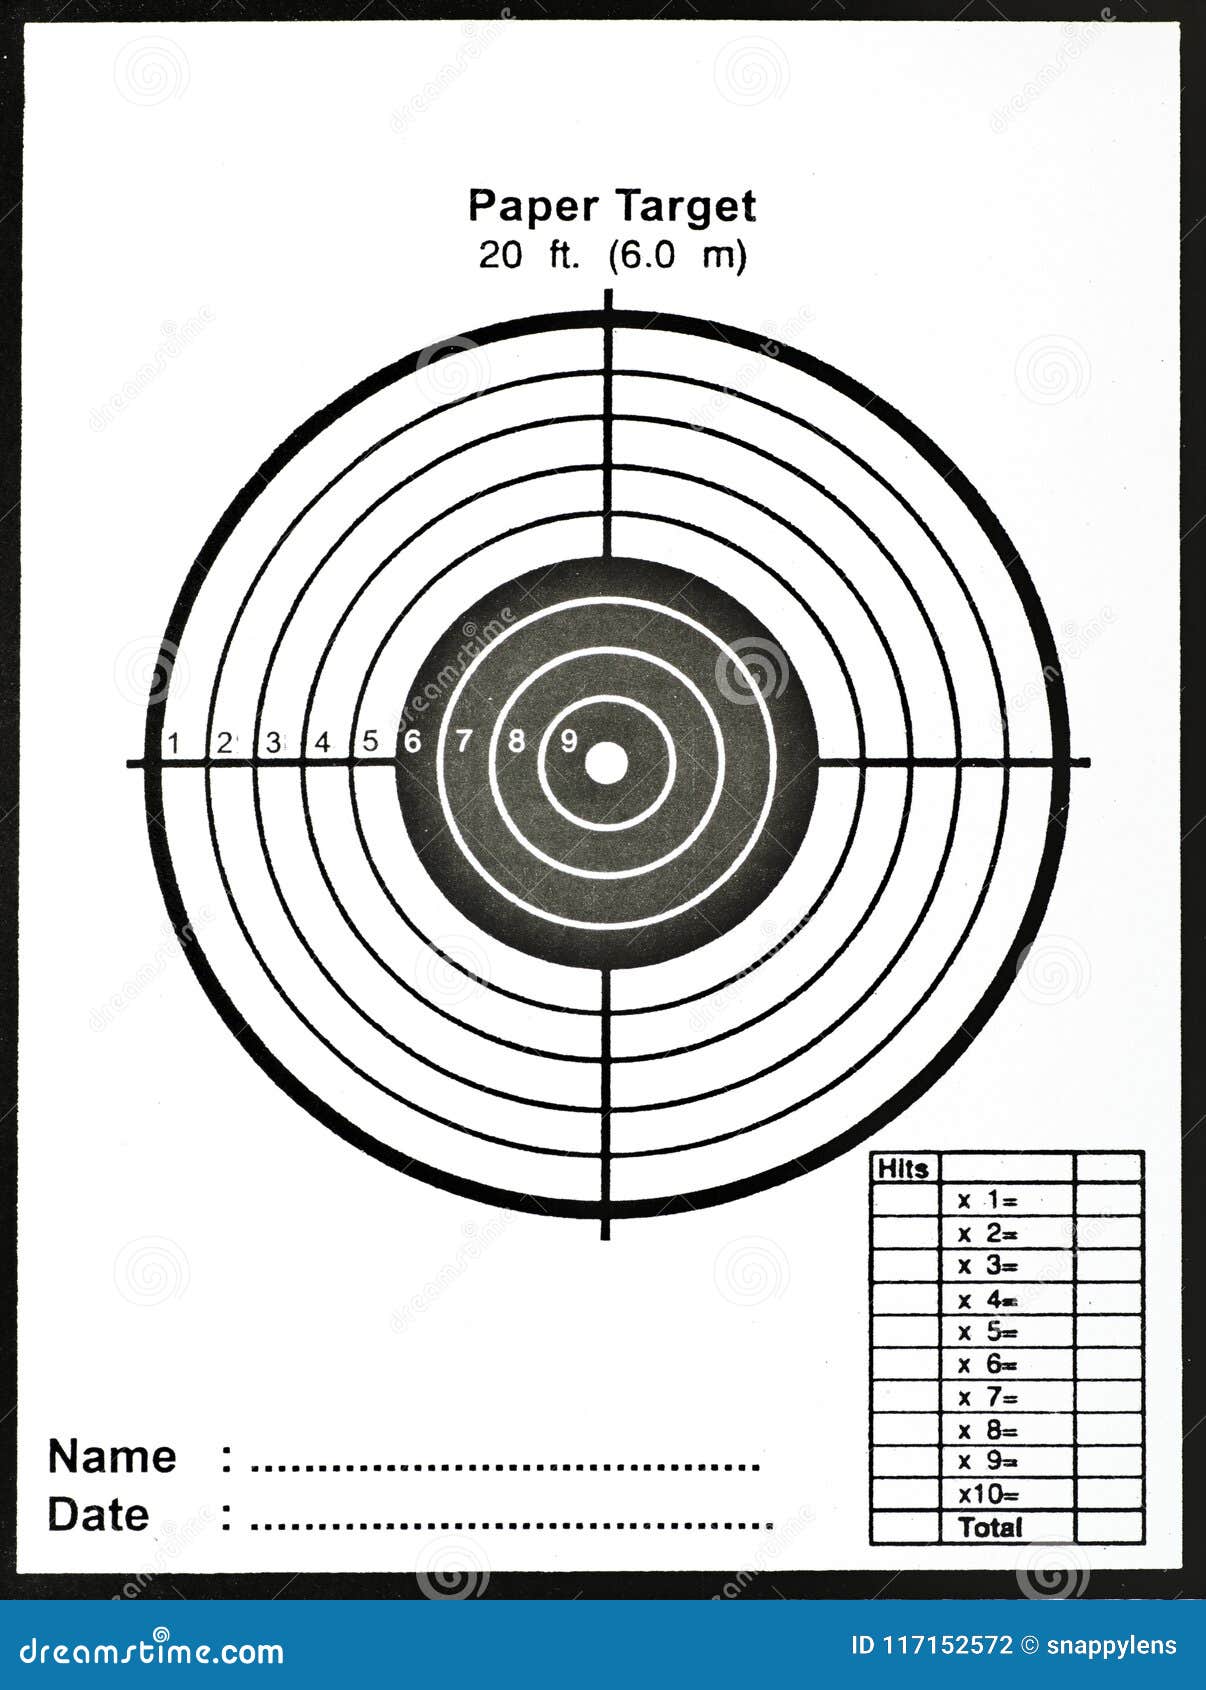 Air gun paper target 5 1/2" 